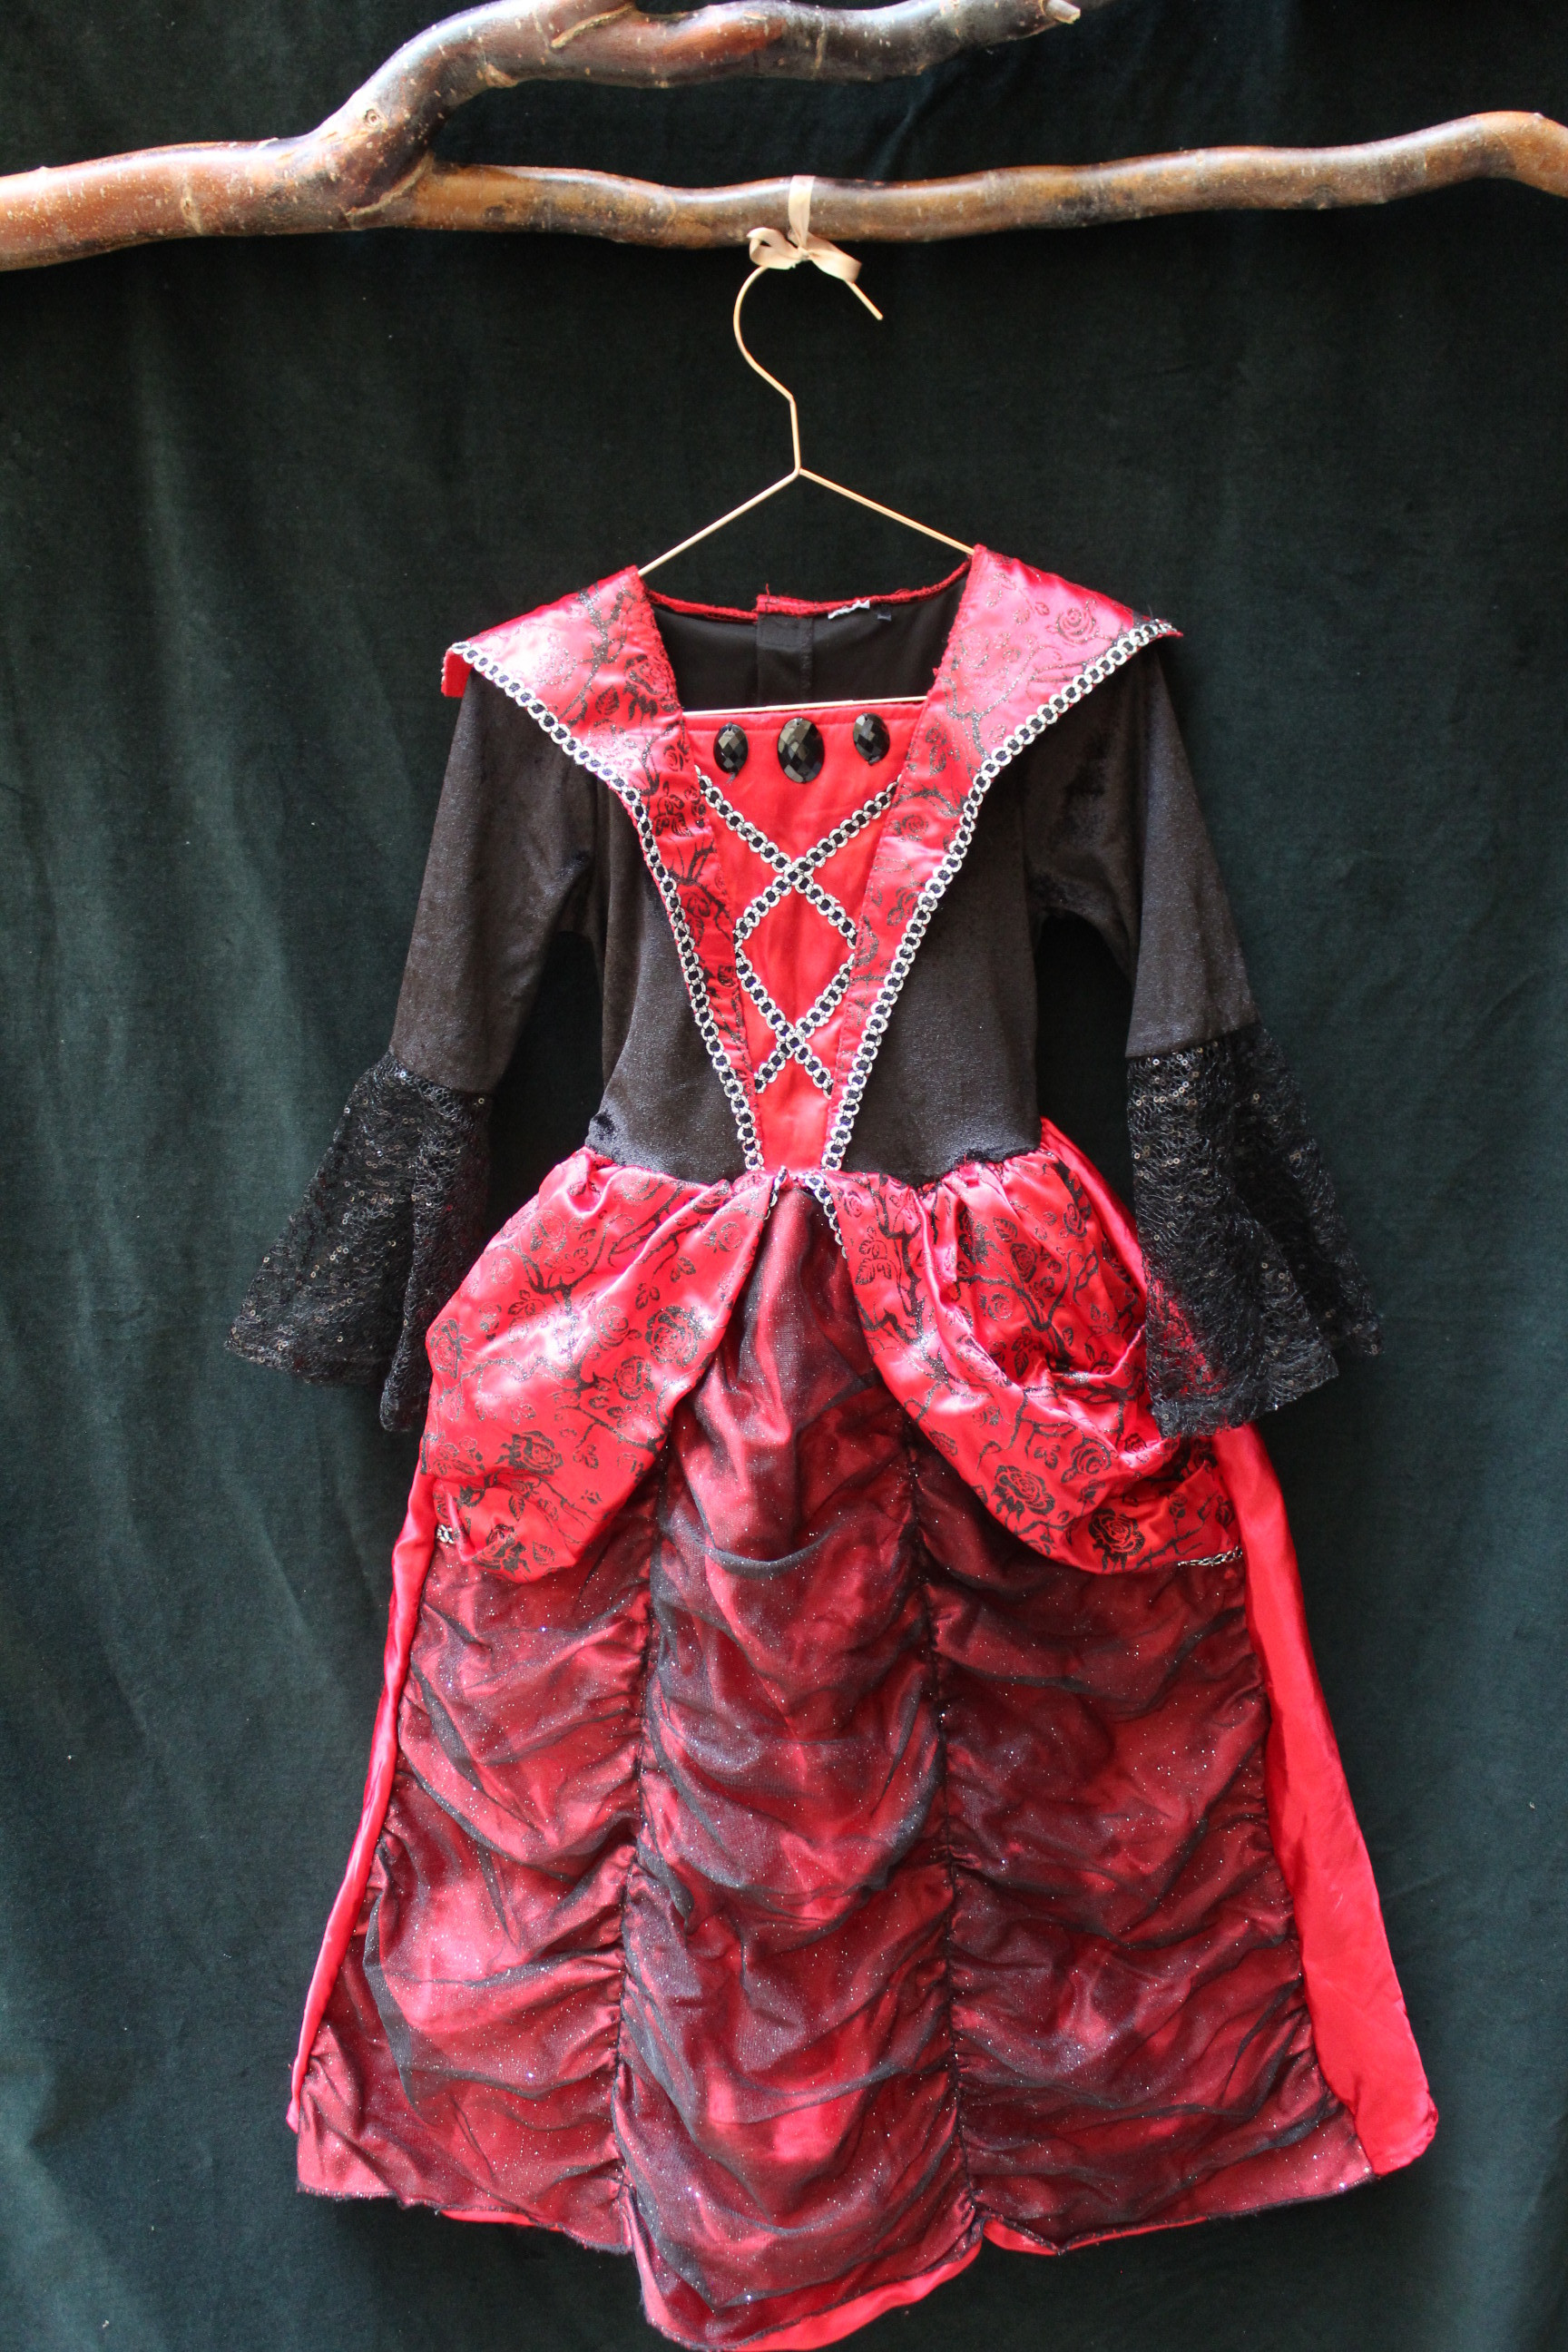 kostým červeno-černé ŠATY pro princeznu TU 4-6Y